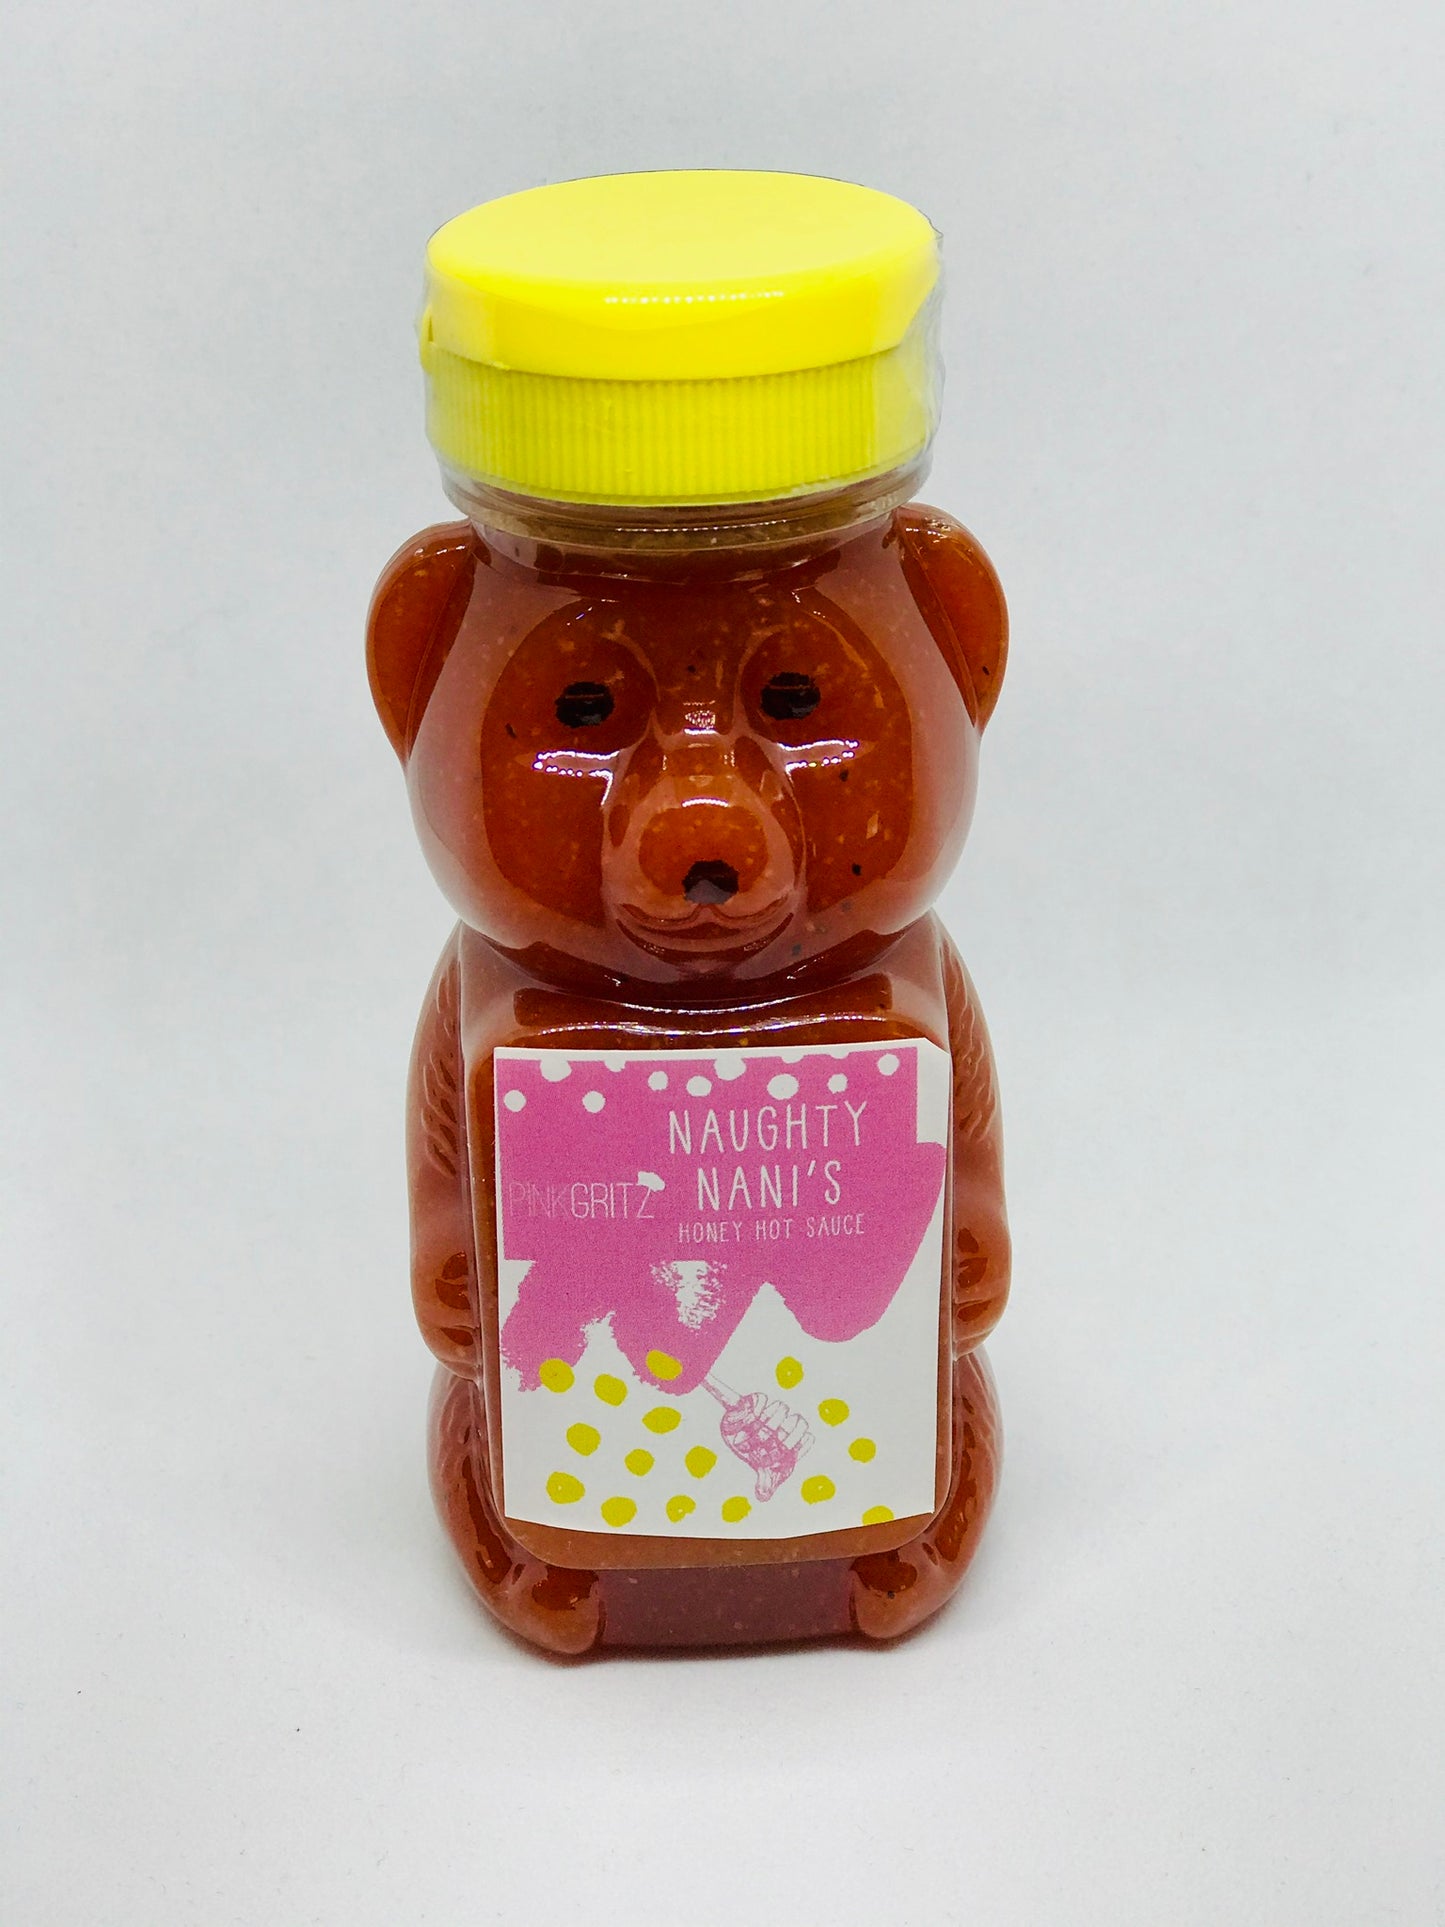 Naughty Nani’s Honey Hot Sauce